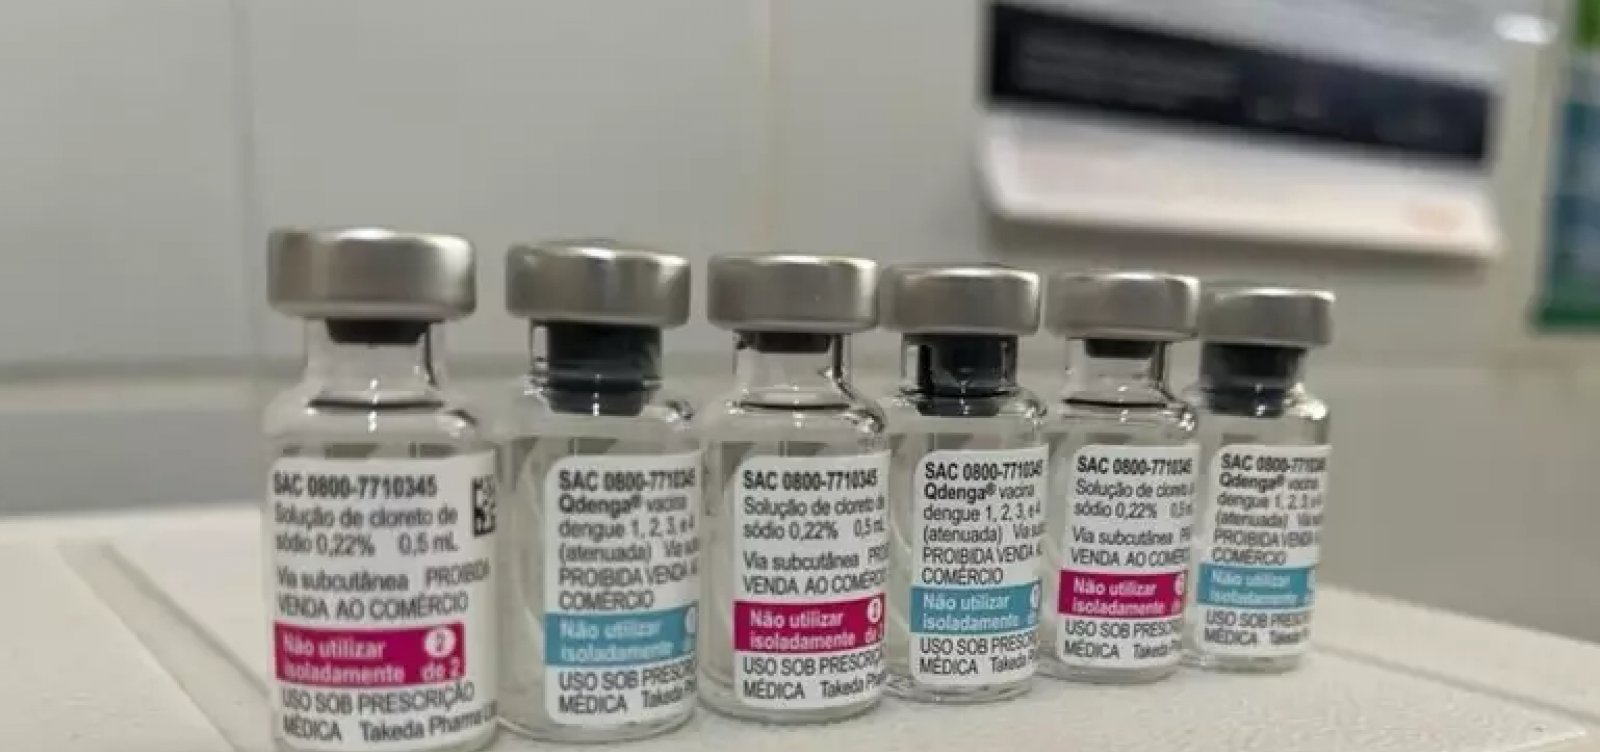 Vacina contra a dengue se torna prioridade do SUS para fabricantes devido a epidemia no Brasil 